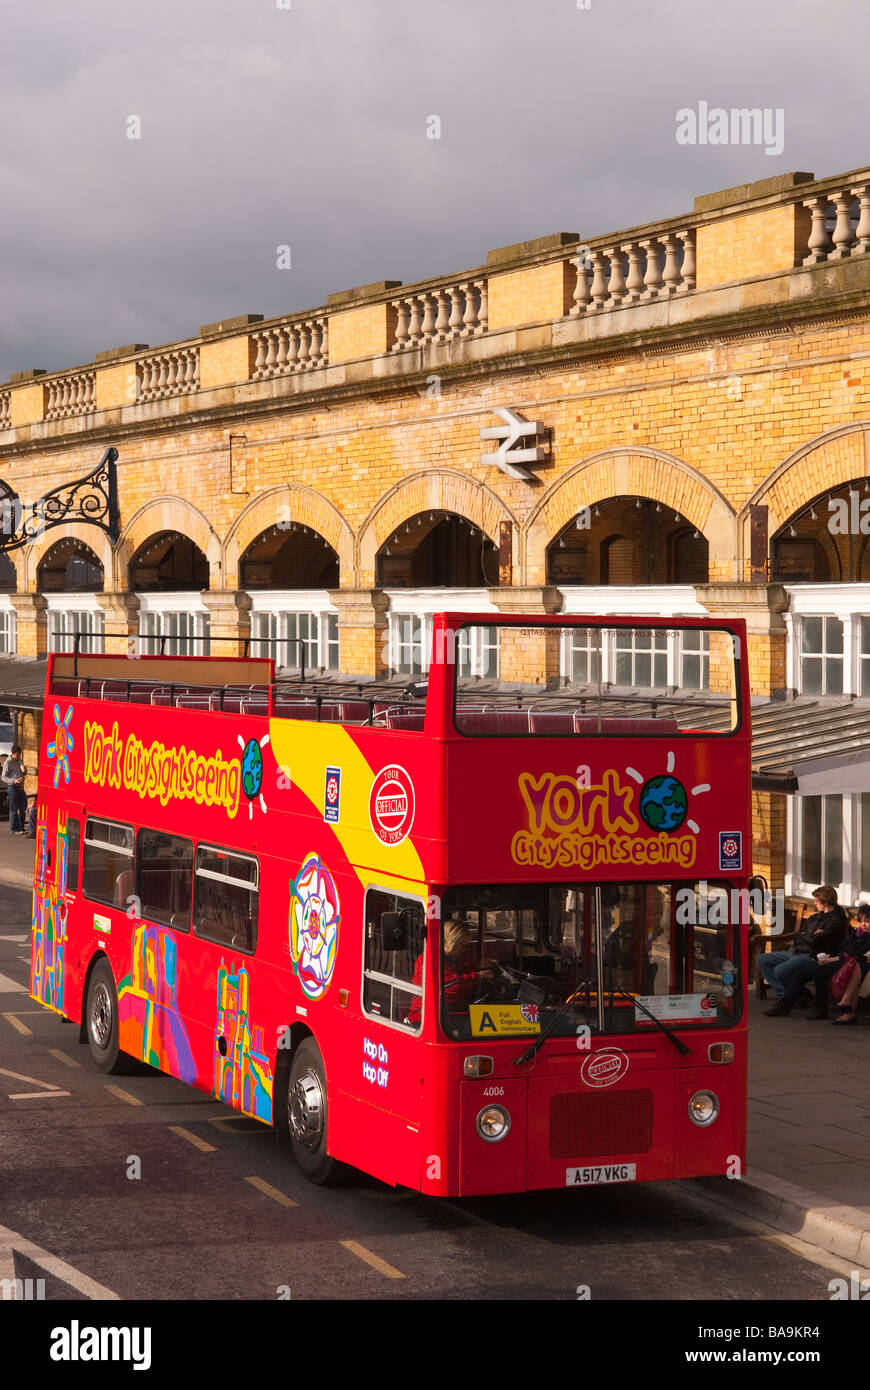 Un rosso york citysightseeing tour open top double decker bus fuori dalla stazione ferroviaria di York,Yorkshire, Regno Unito Foto Stock